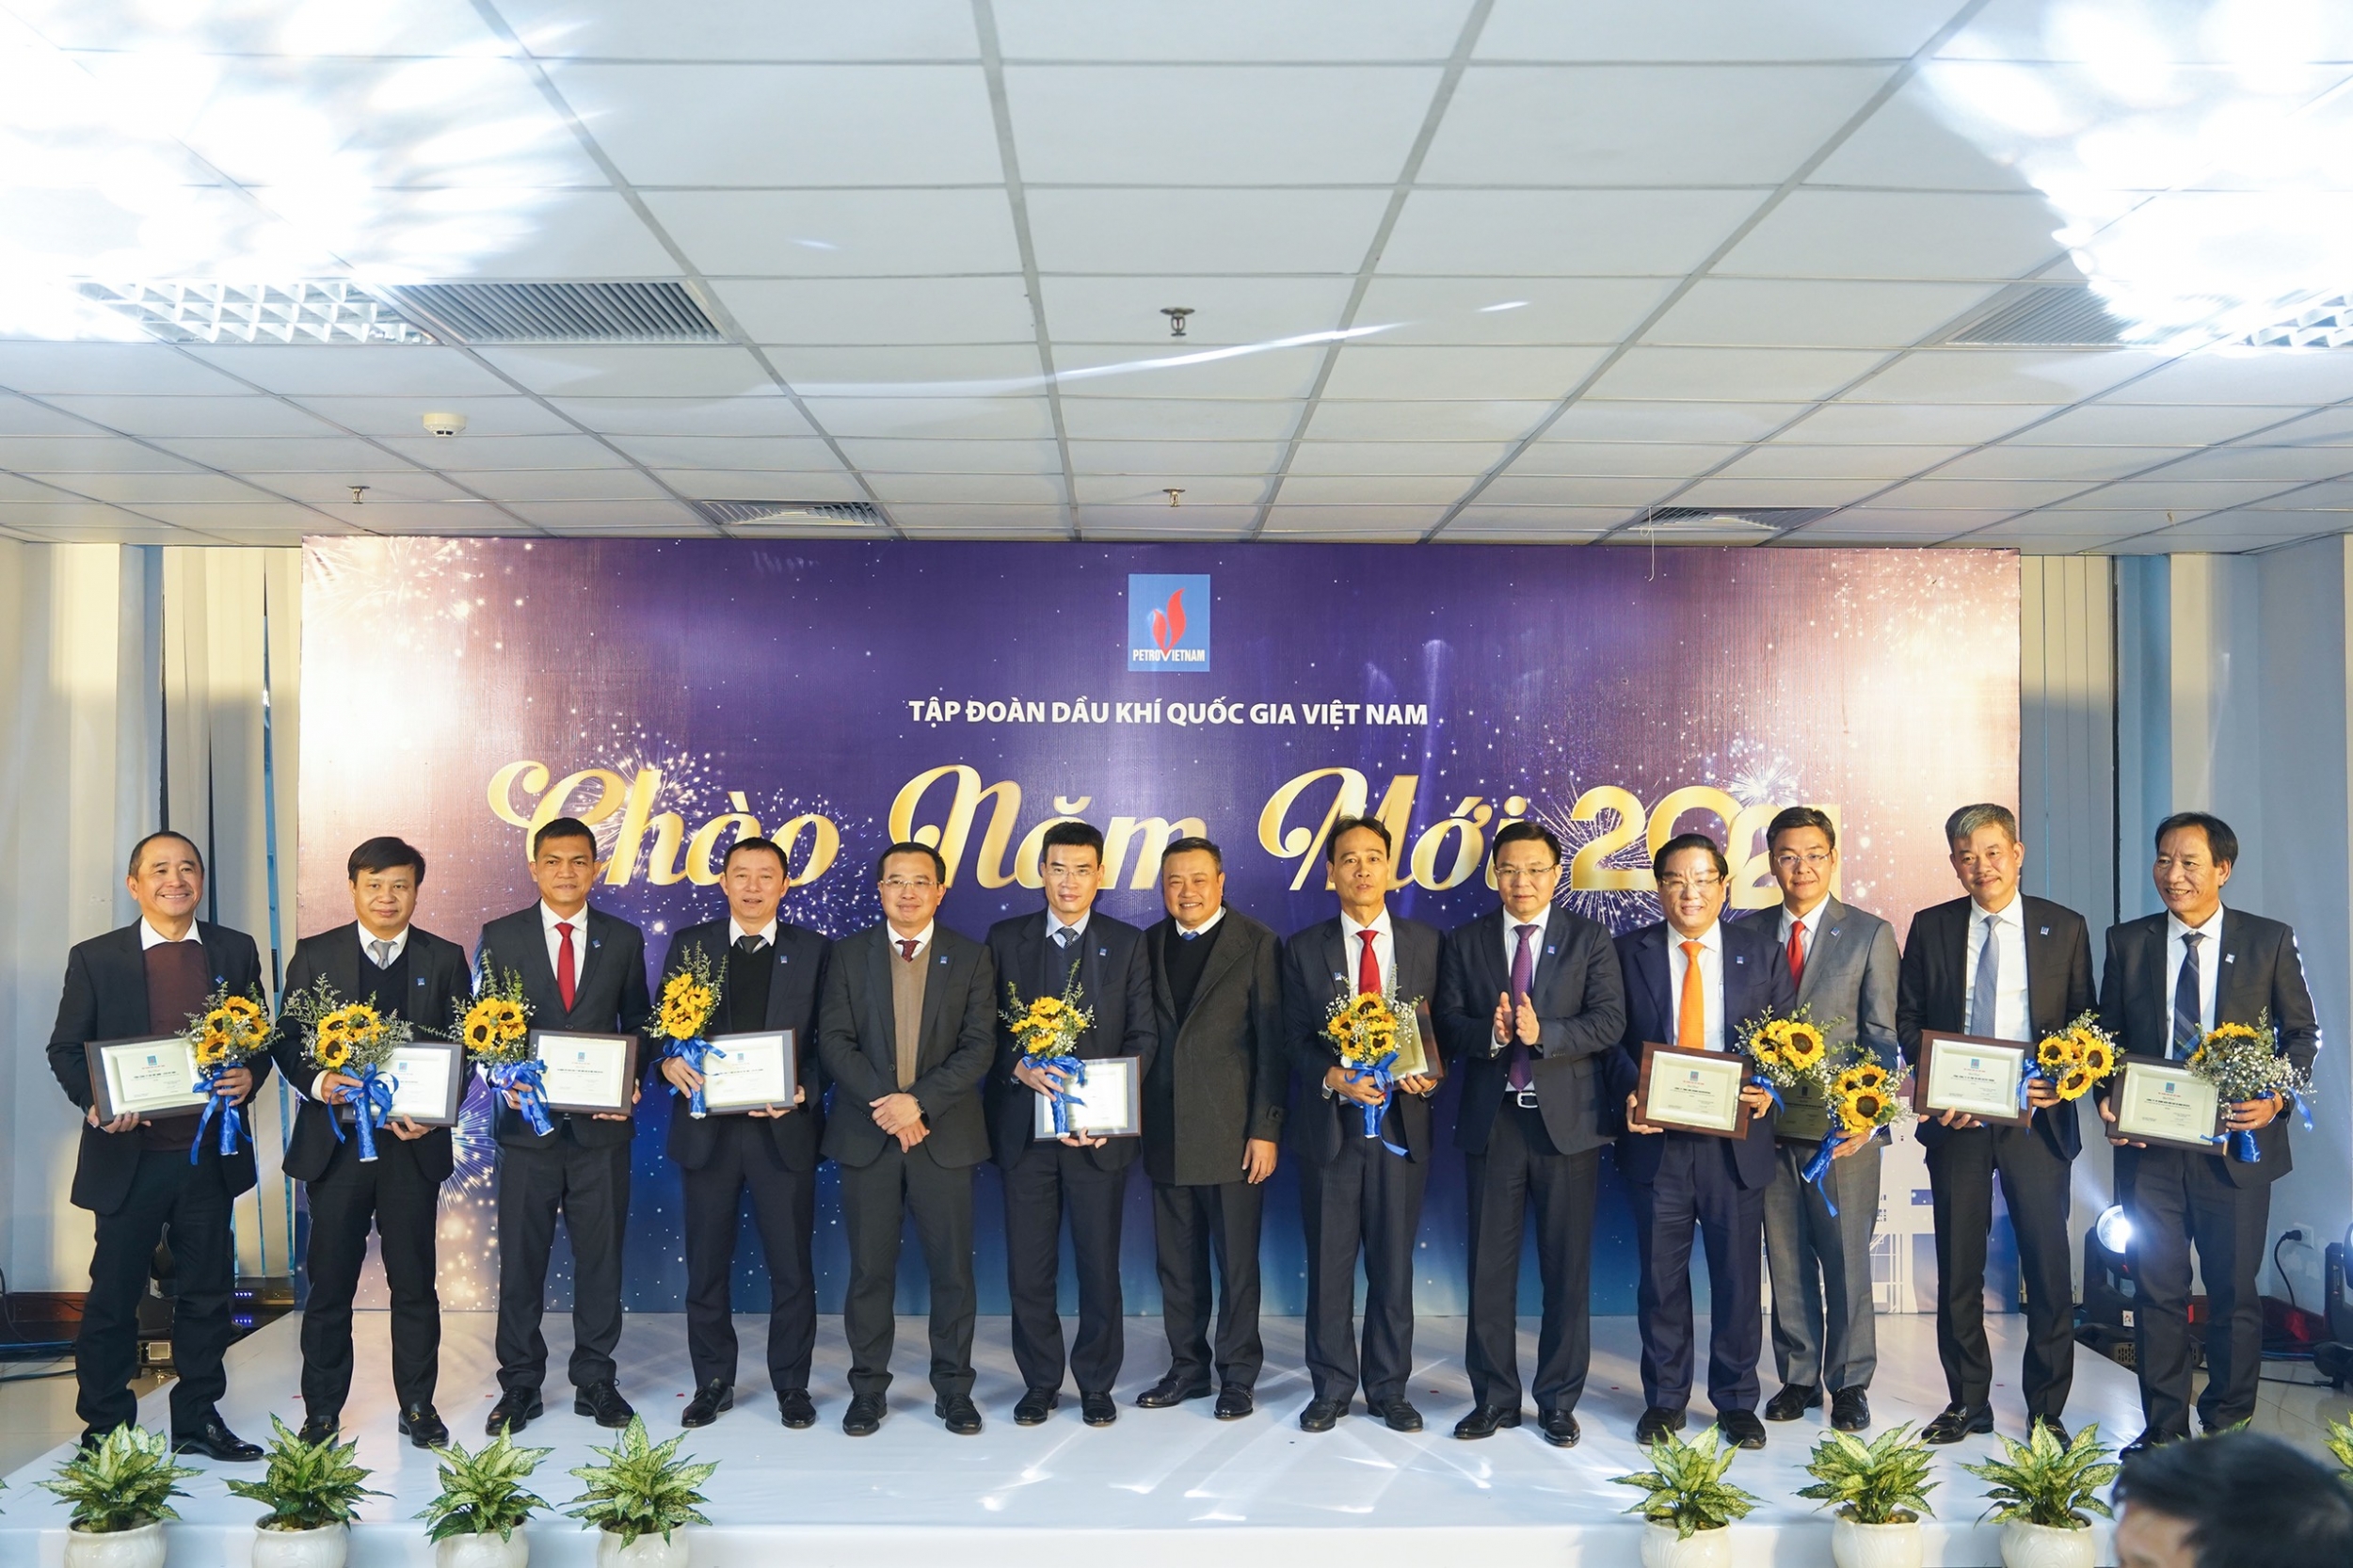 Tôn vinh các đơn vị đóng góp cho thành công của toàn Tập đoàn Dầu khí Quốc gia Việt Nam